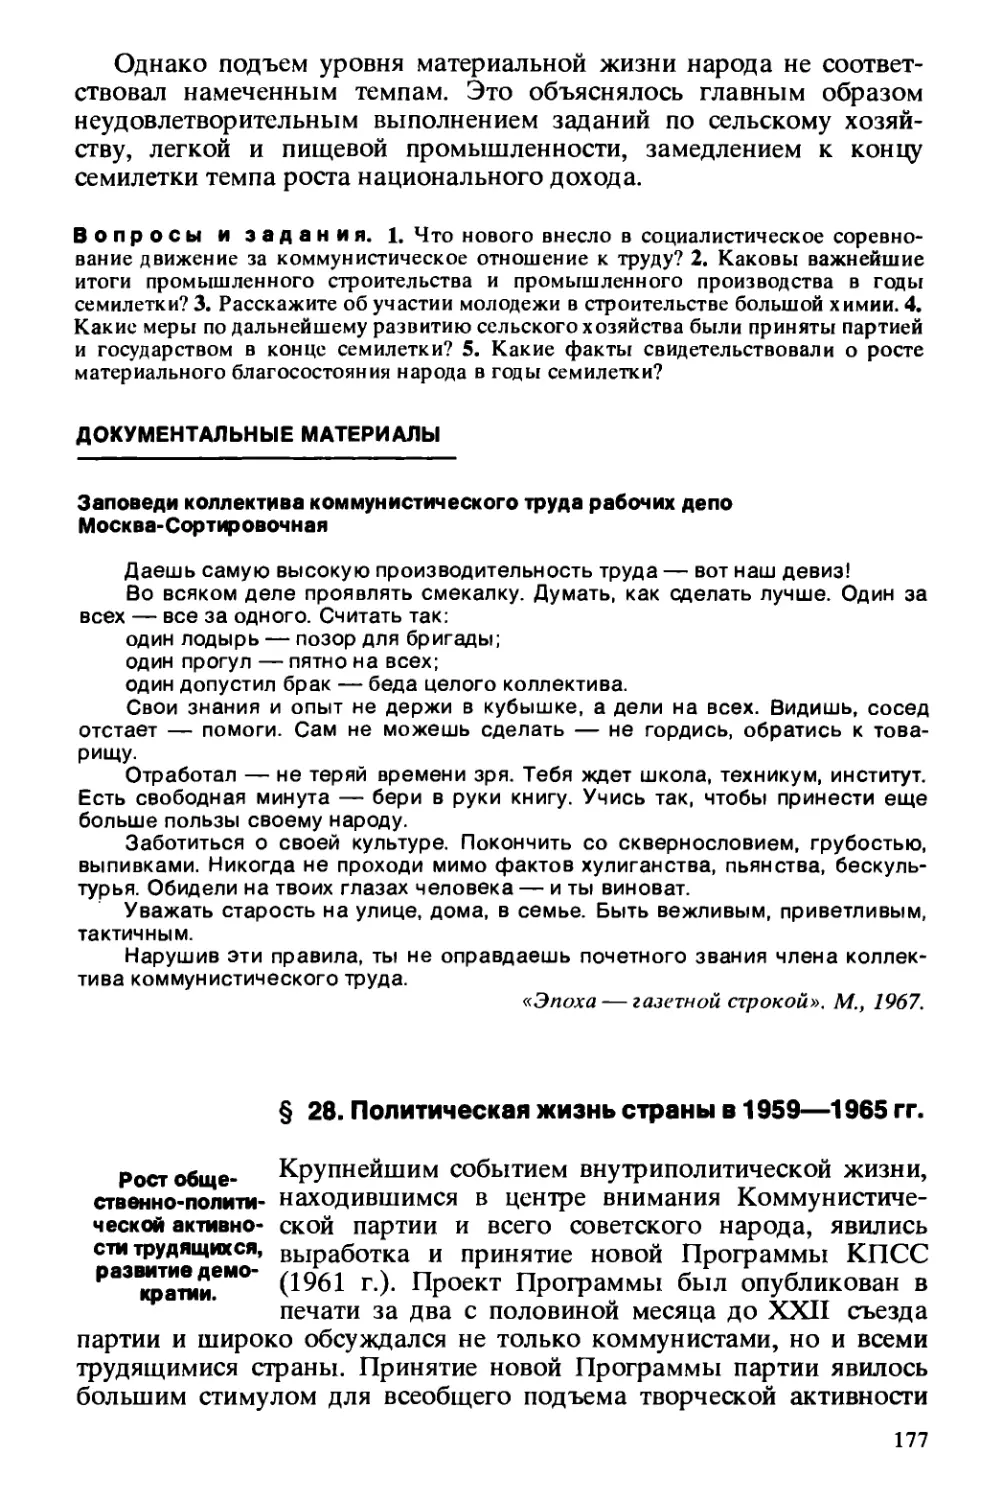 § 28. Политическая жизнь страны в 1959—1965 гг.